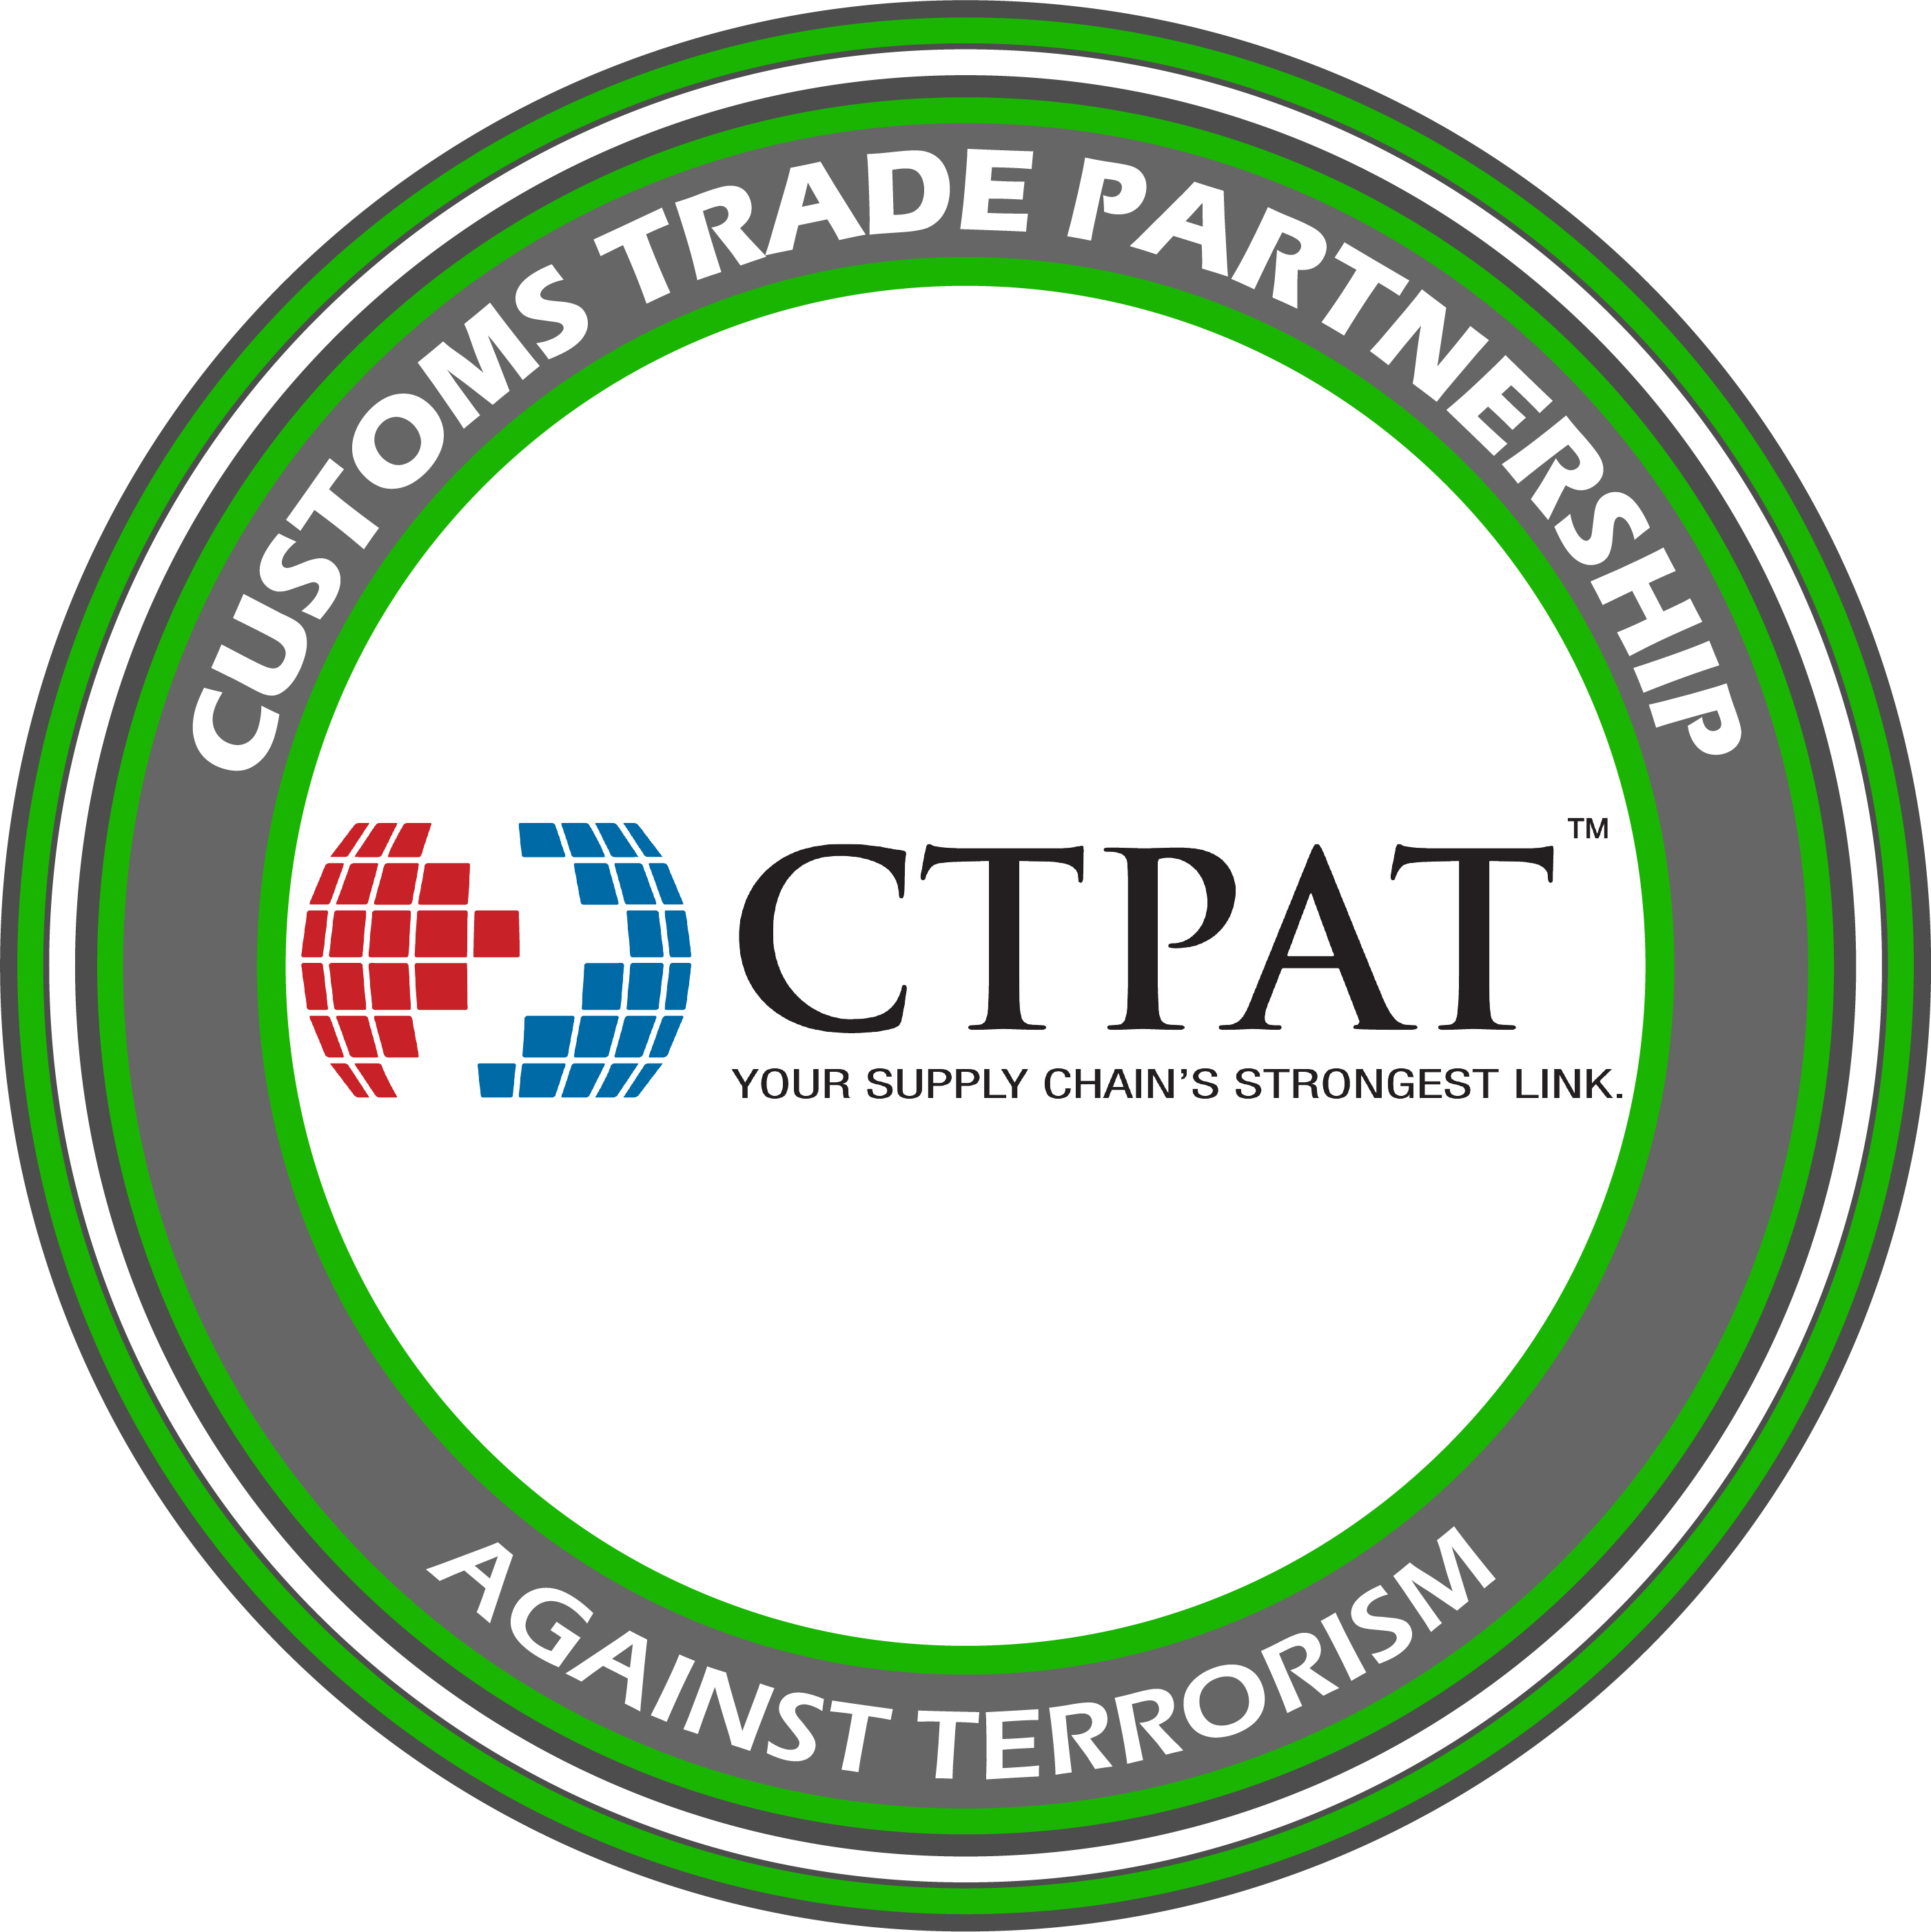 CTPAT Customs Trade Partnership Against Terrorism 3PP GLOBAL